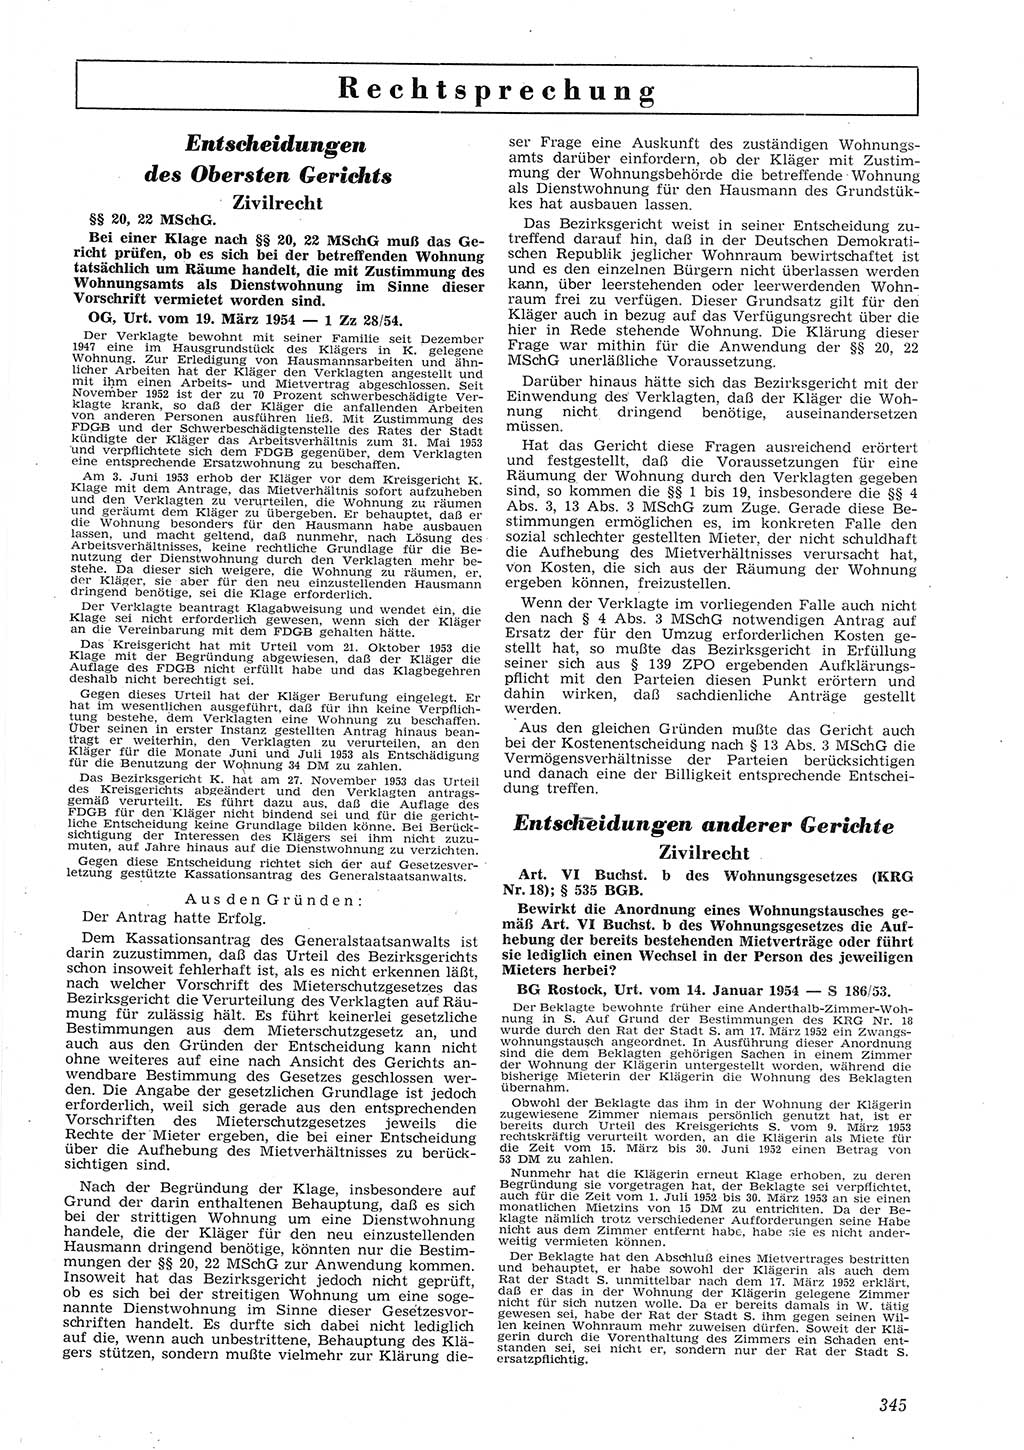 Neue Justiz (NJ), Zeitschrift für Recht und Rechtswissenschaft [Deutsche Demokratische Republik (DDR)], 8. Jahrgang 1954, Seite 345 (NJ DDR 1954, S. 345)